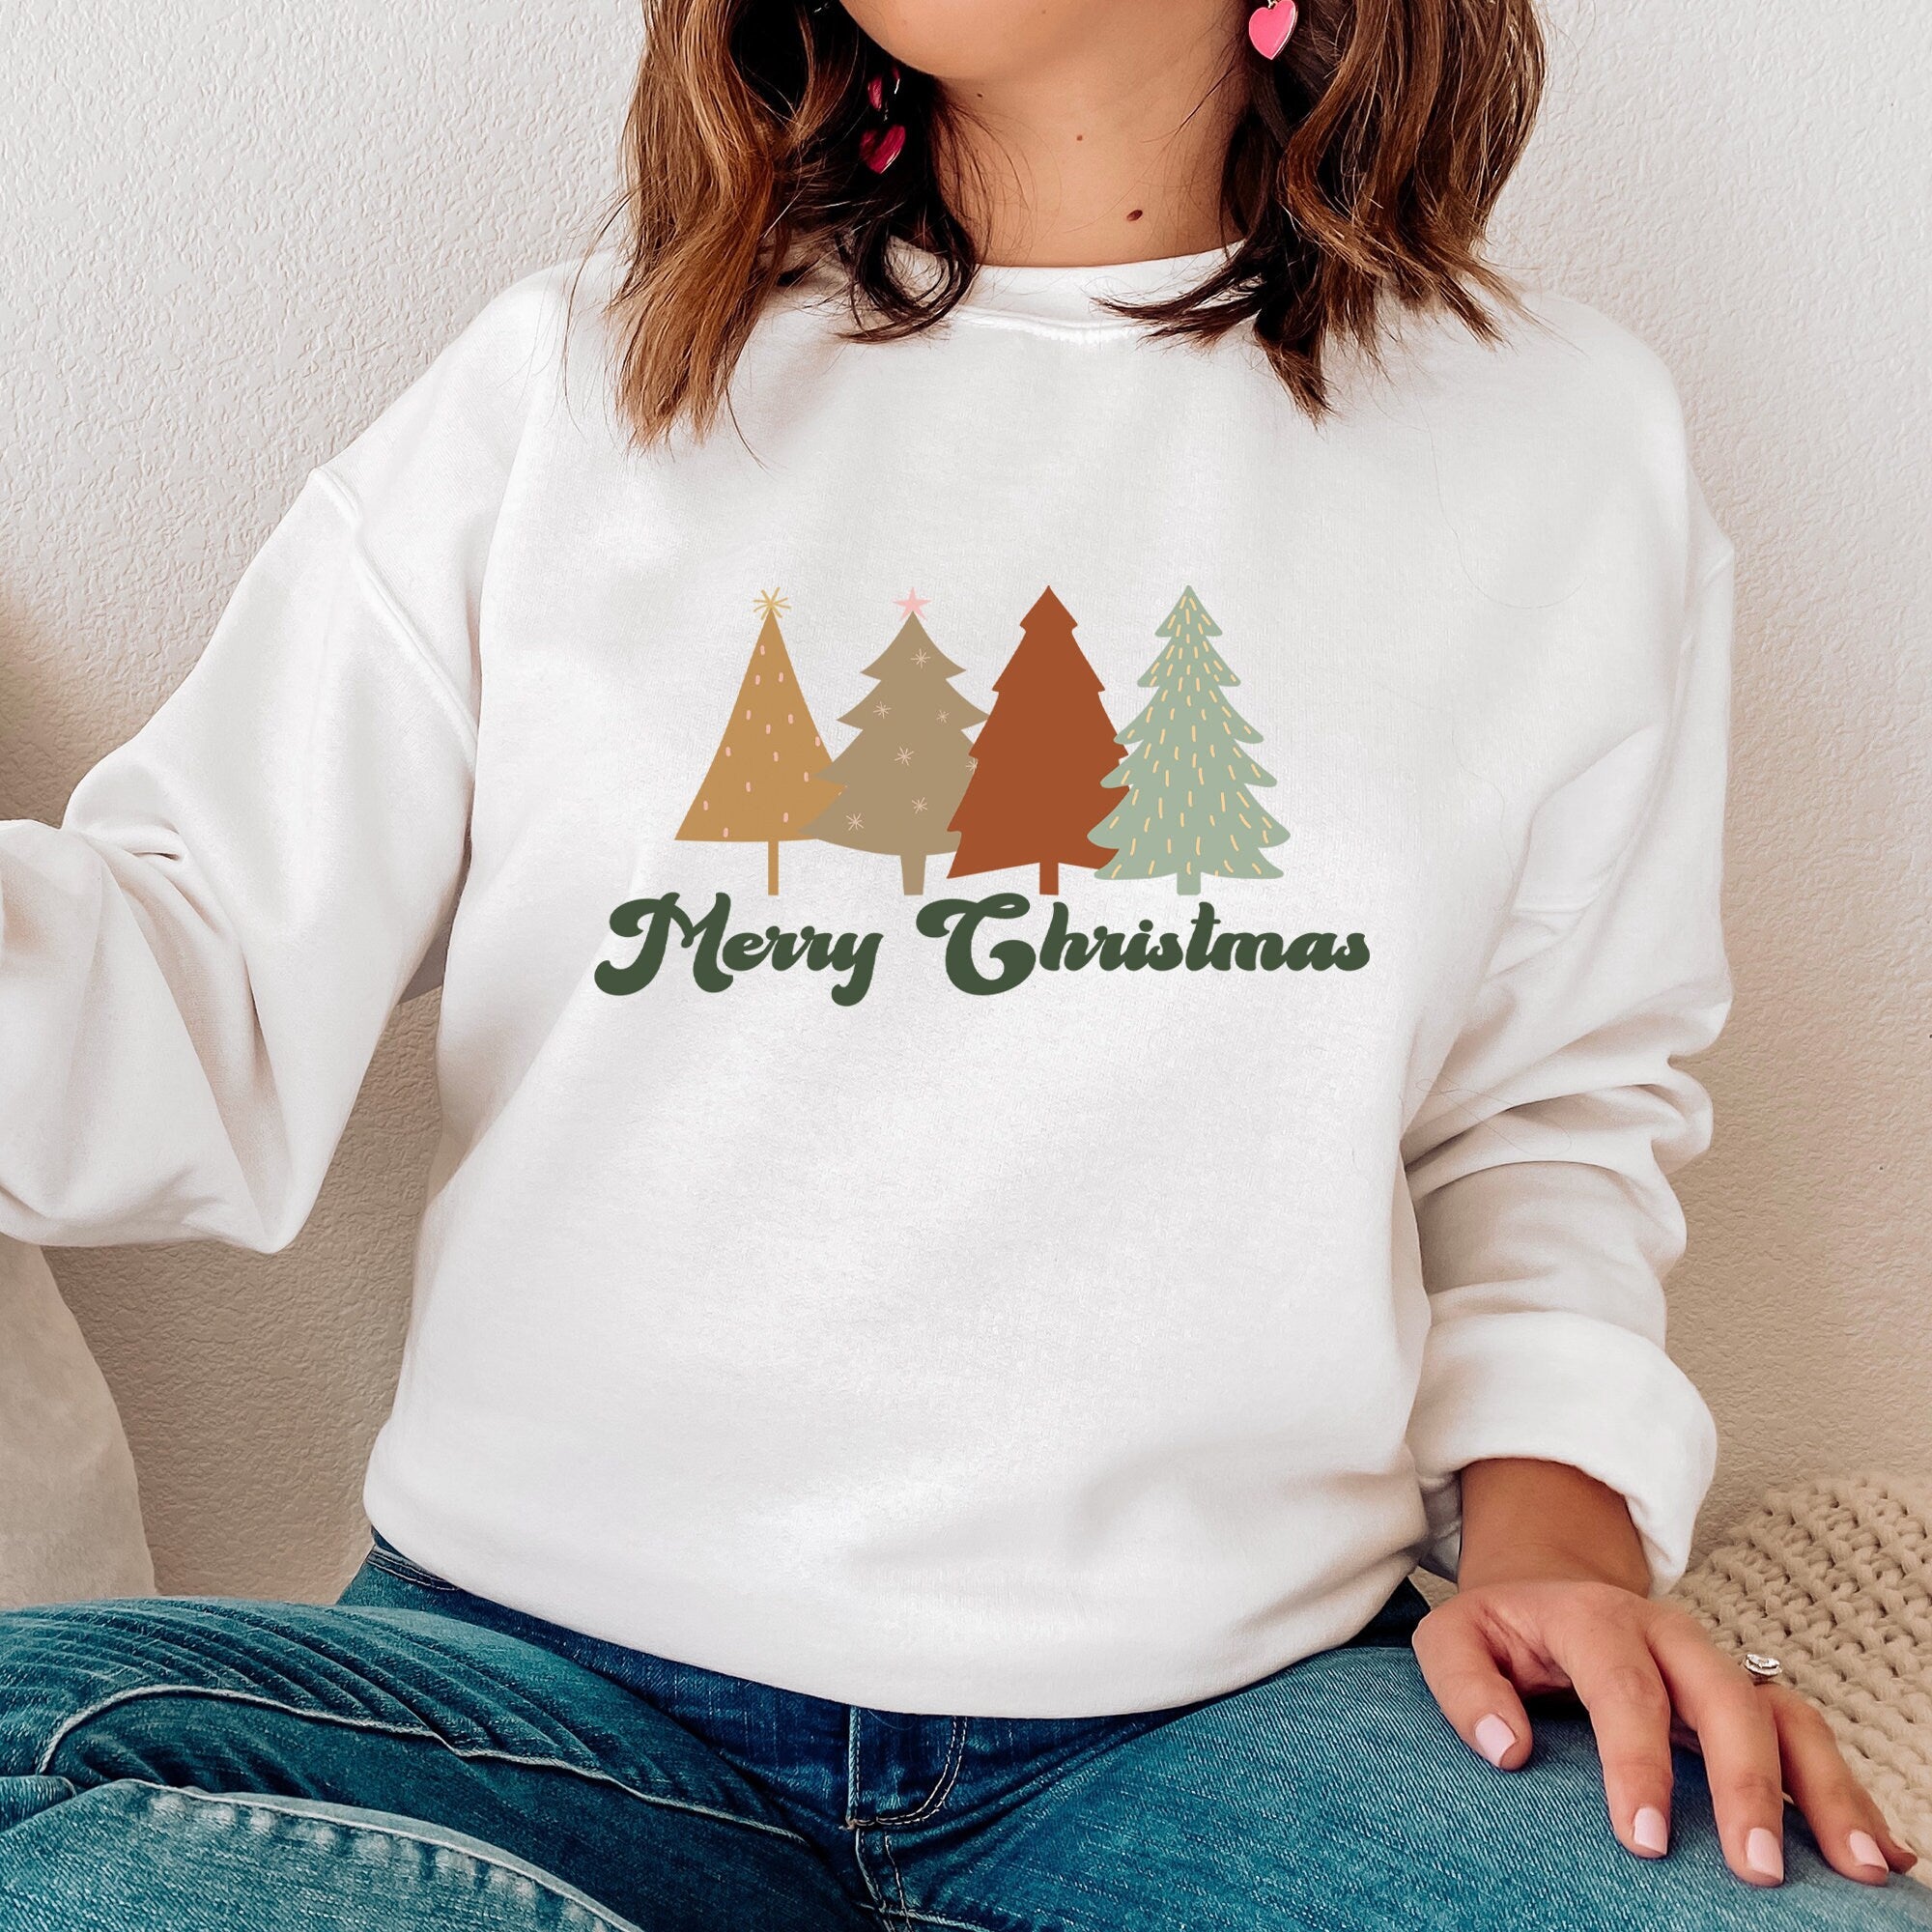 Merry Christmas Sweatshirt, Christmas Shirt, Christmas Shirts For Women, Christmas Gifts, Christmas Sweatshirts